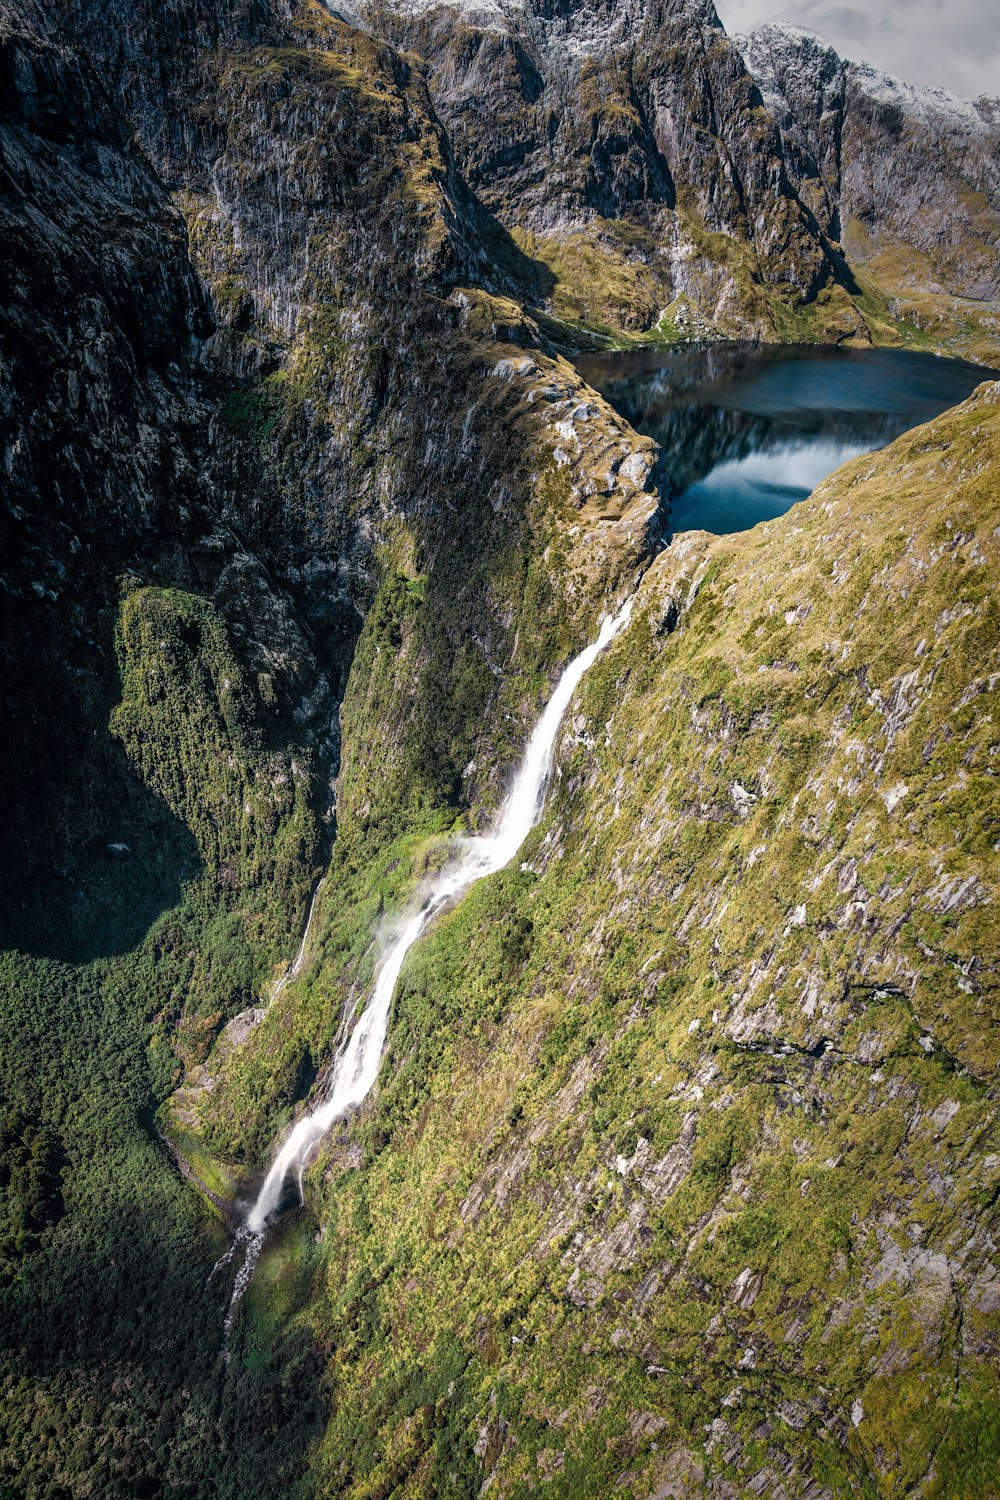 Vista superior do lago com cachoeiras